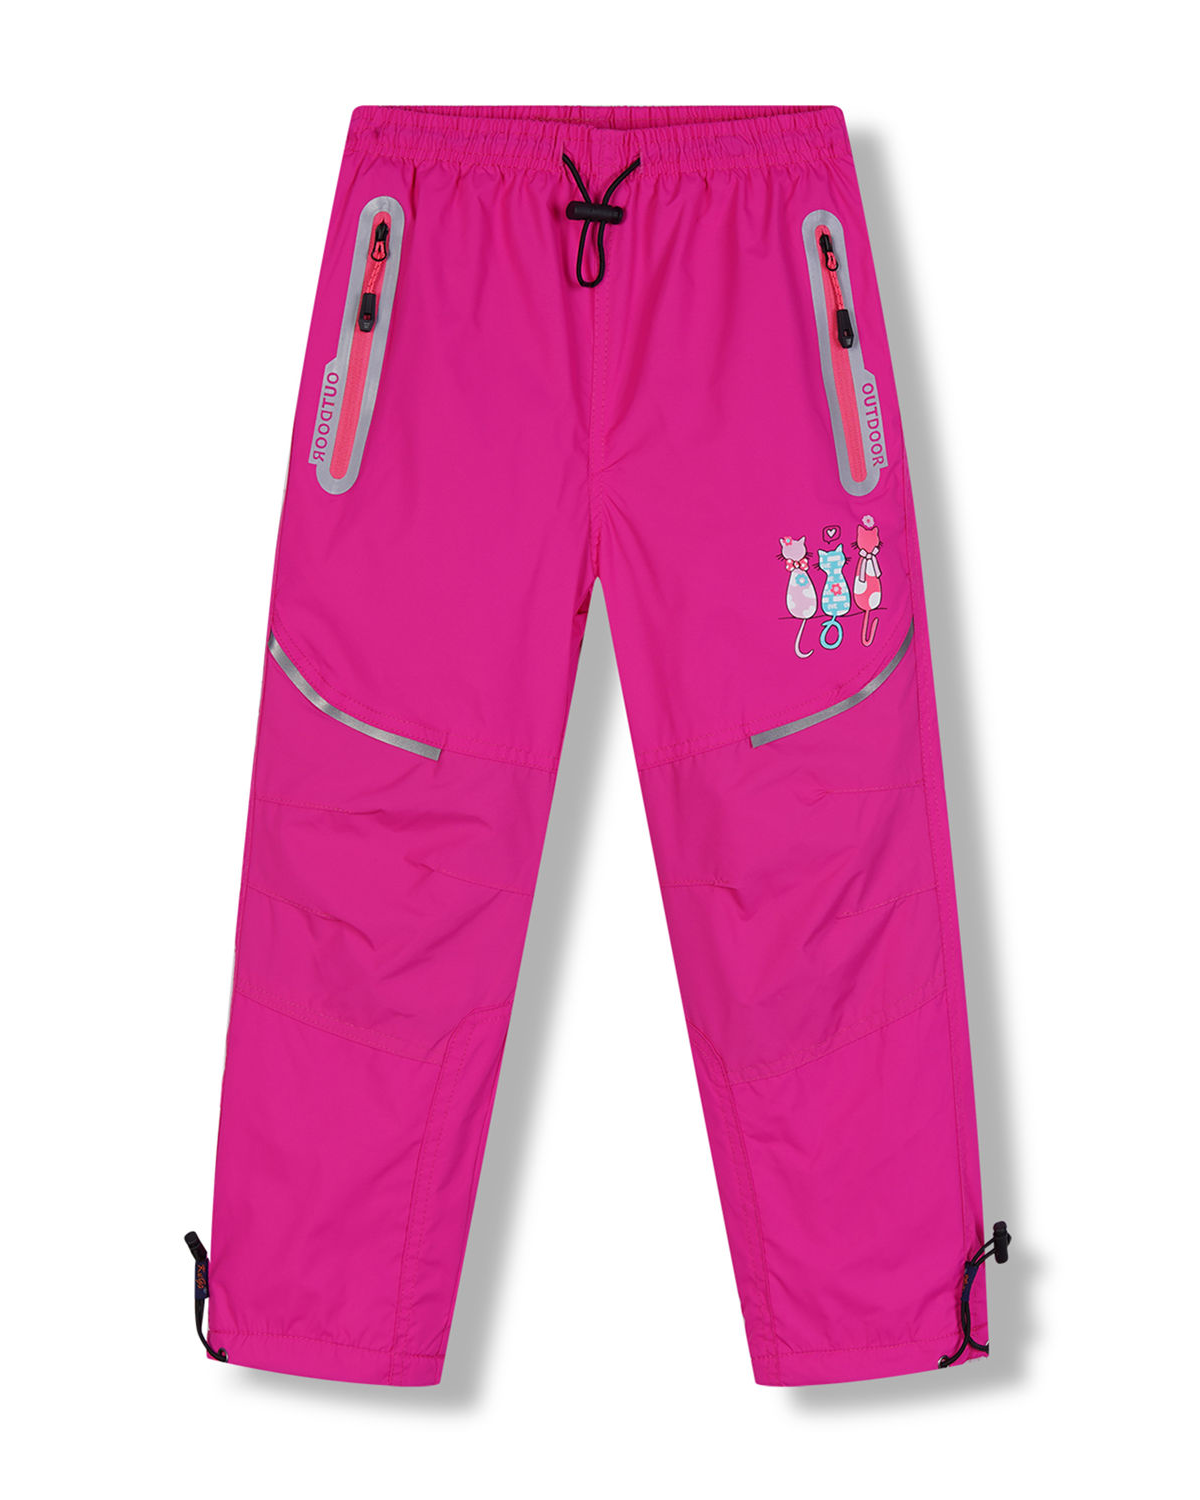 Dívčí šusťákové kalhoty, zateplené - KUGO DK8233, růžová Barva: Růžová, Velikost: 128